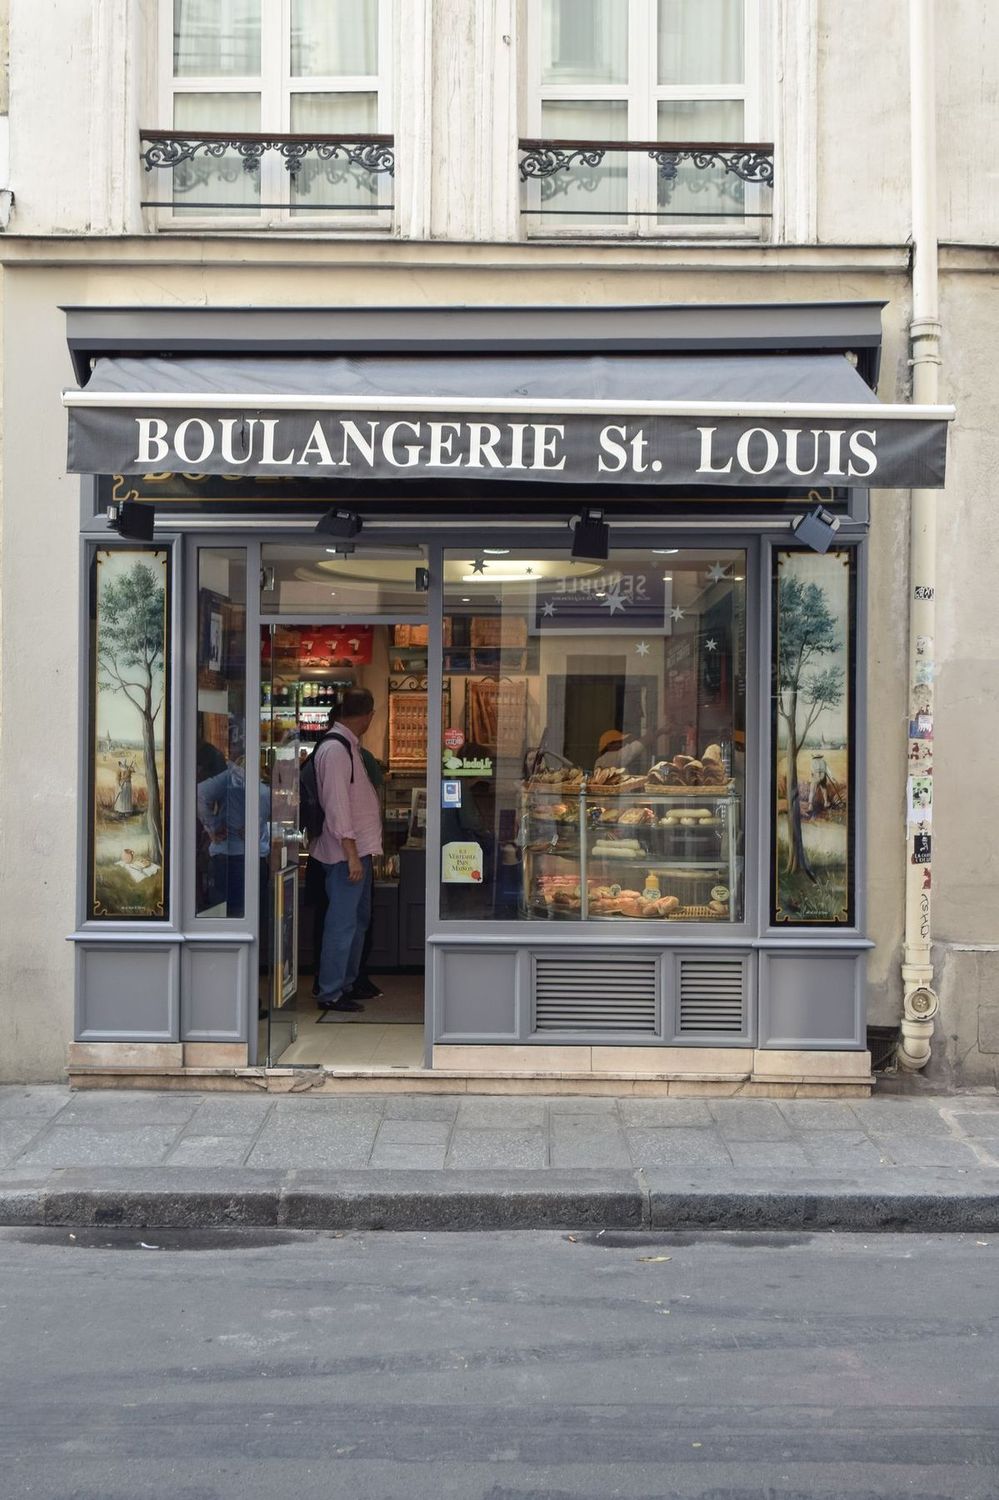 Boulangerie St. Louis, Île Saint-Louis, Paris